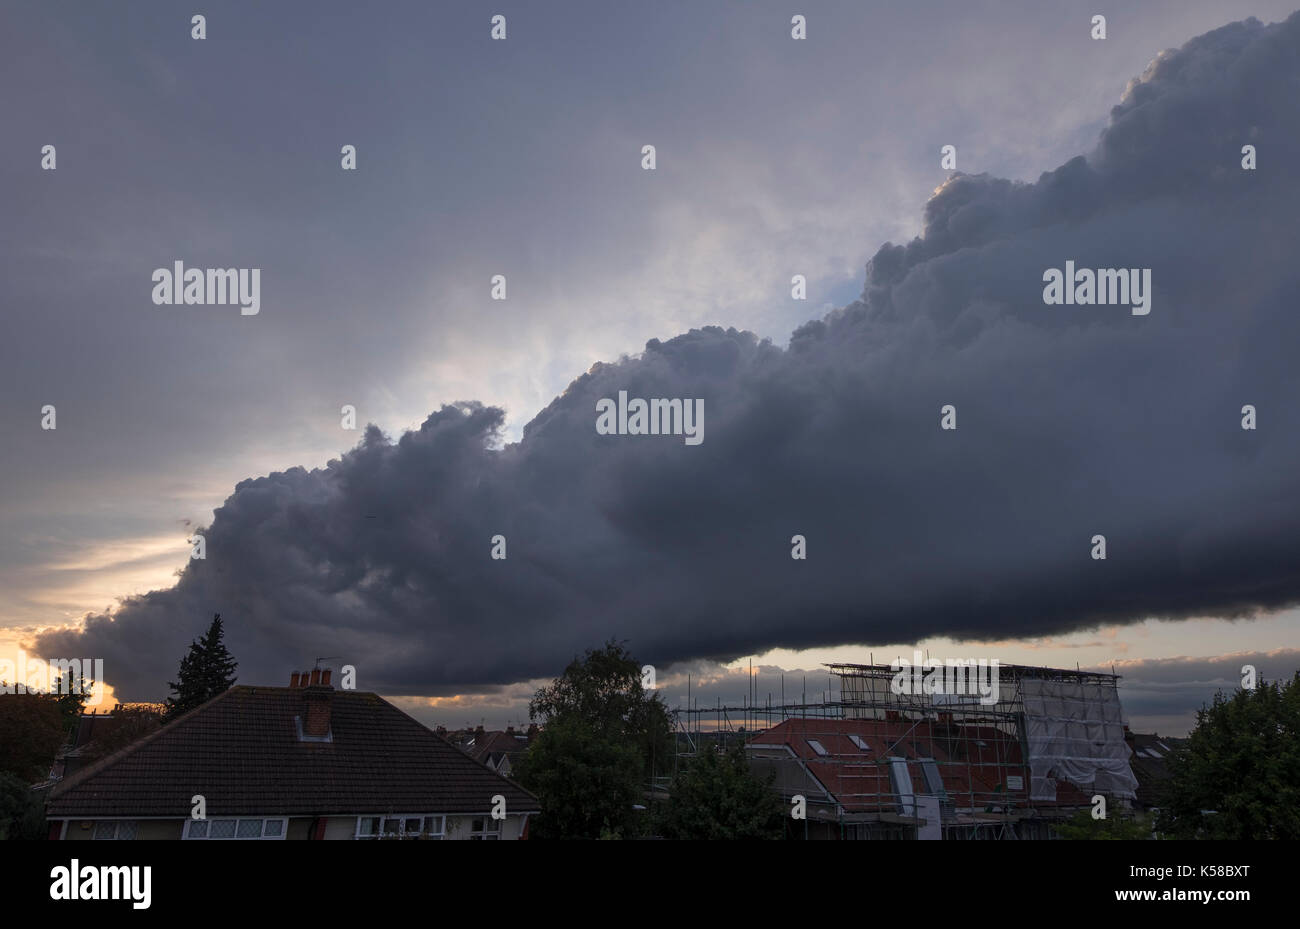 Londres, Reino Unido. 8 de septiembre de 2017. La estructura de la nube gigante rollos en Londres atardecer, estiramiento de horizonte a horizonte - vista al oeste. Crédito: Malcolm park/alamy live news. Foto de stock